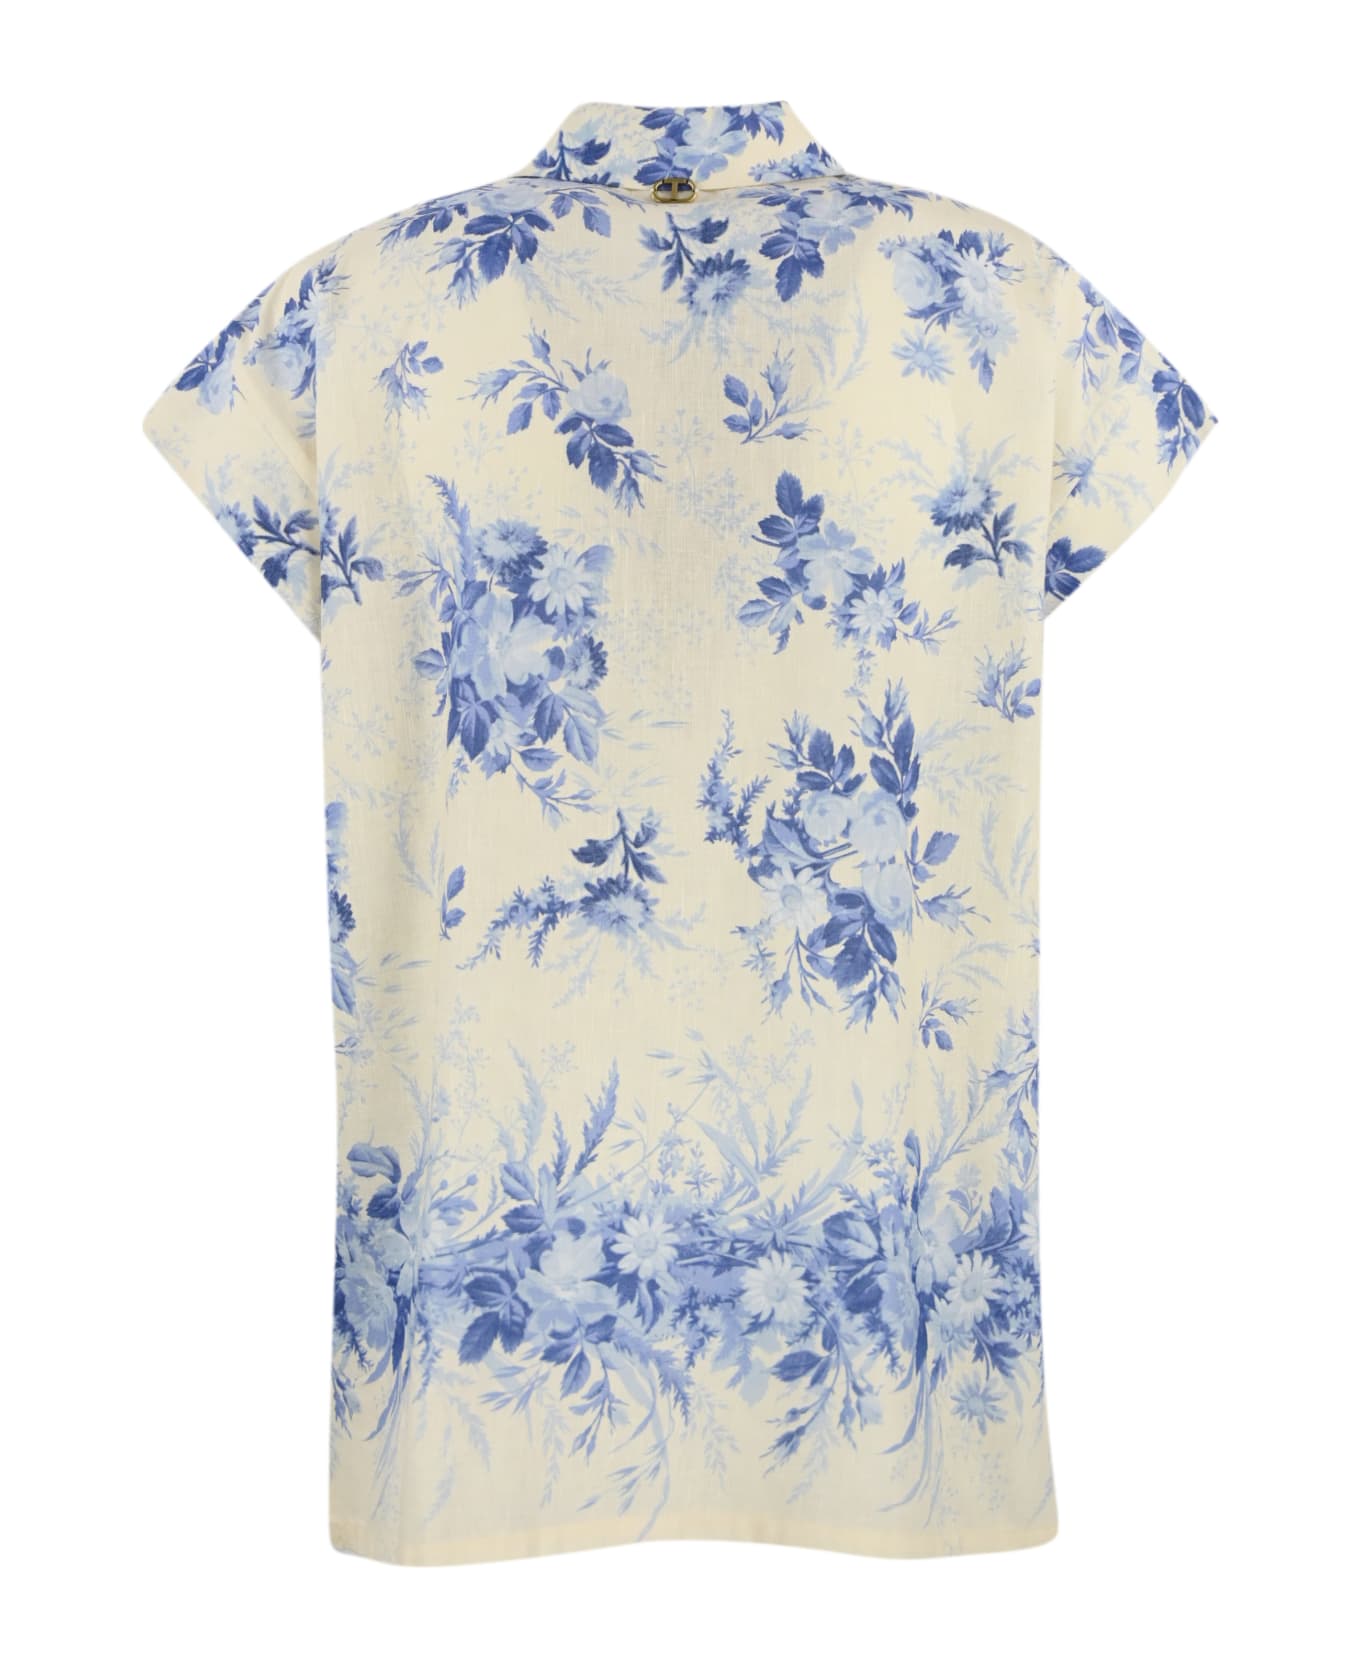 TwinSet Floral Print Linen Blend Shirt - St.toile de jouy